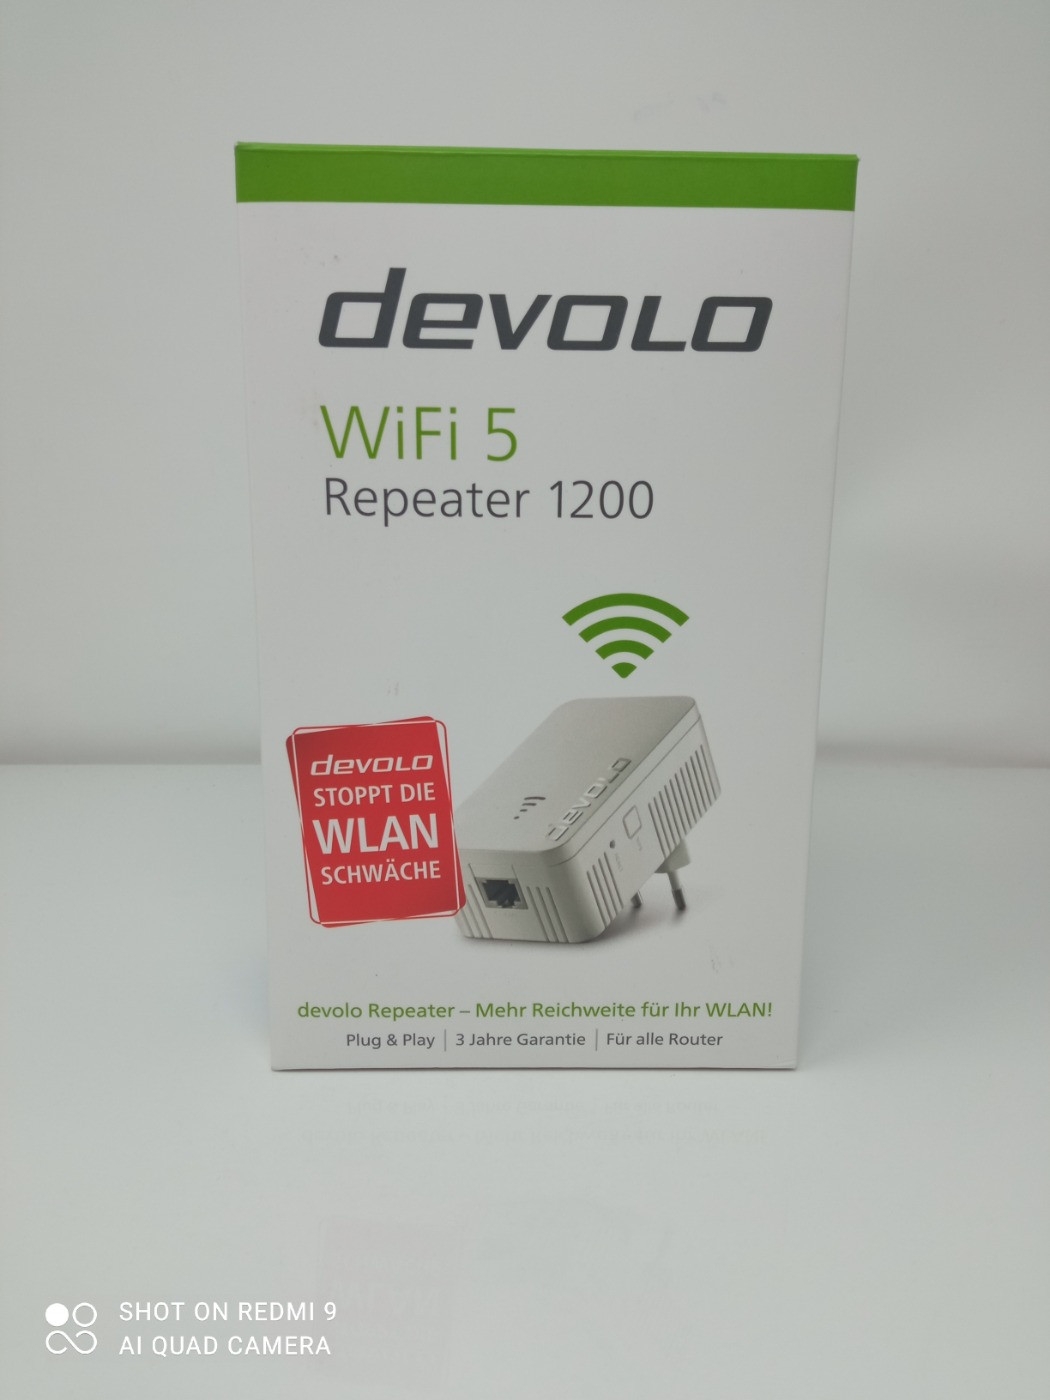  Devolo WiFi 5 Repeater 1200 : Electronics